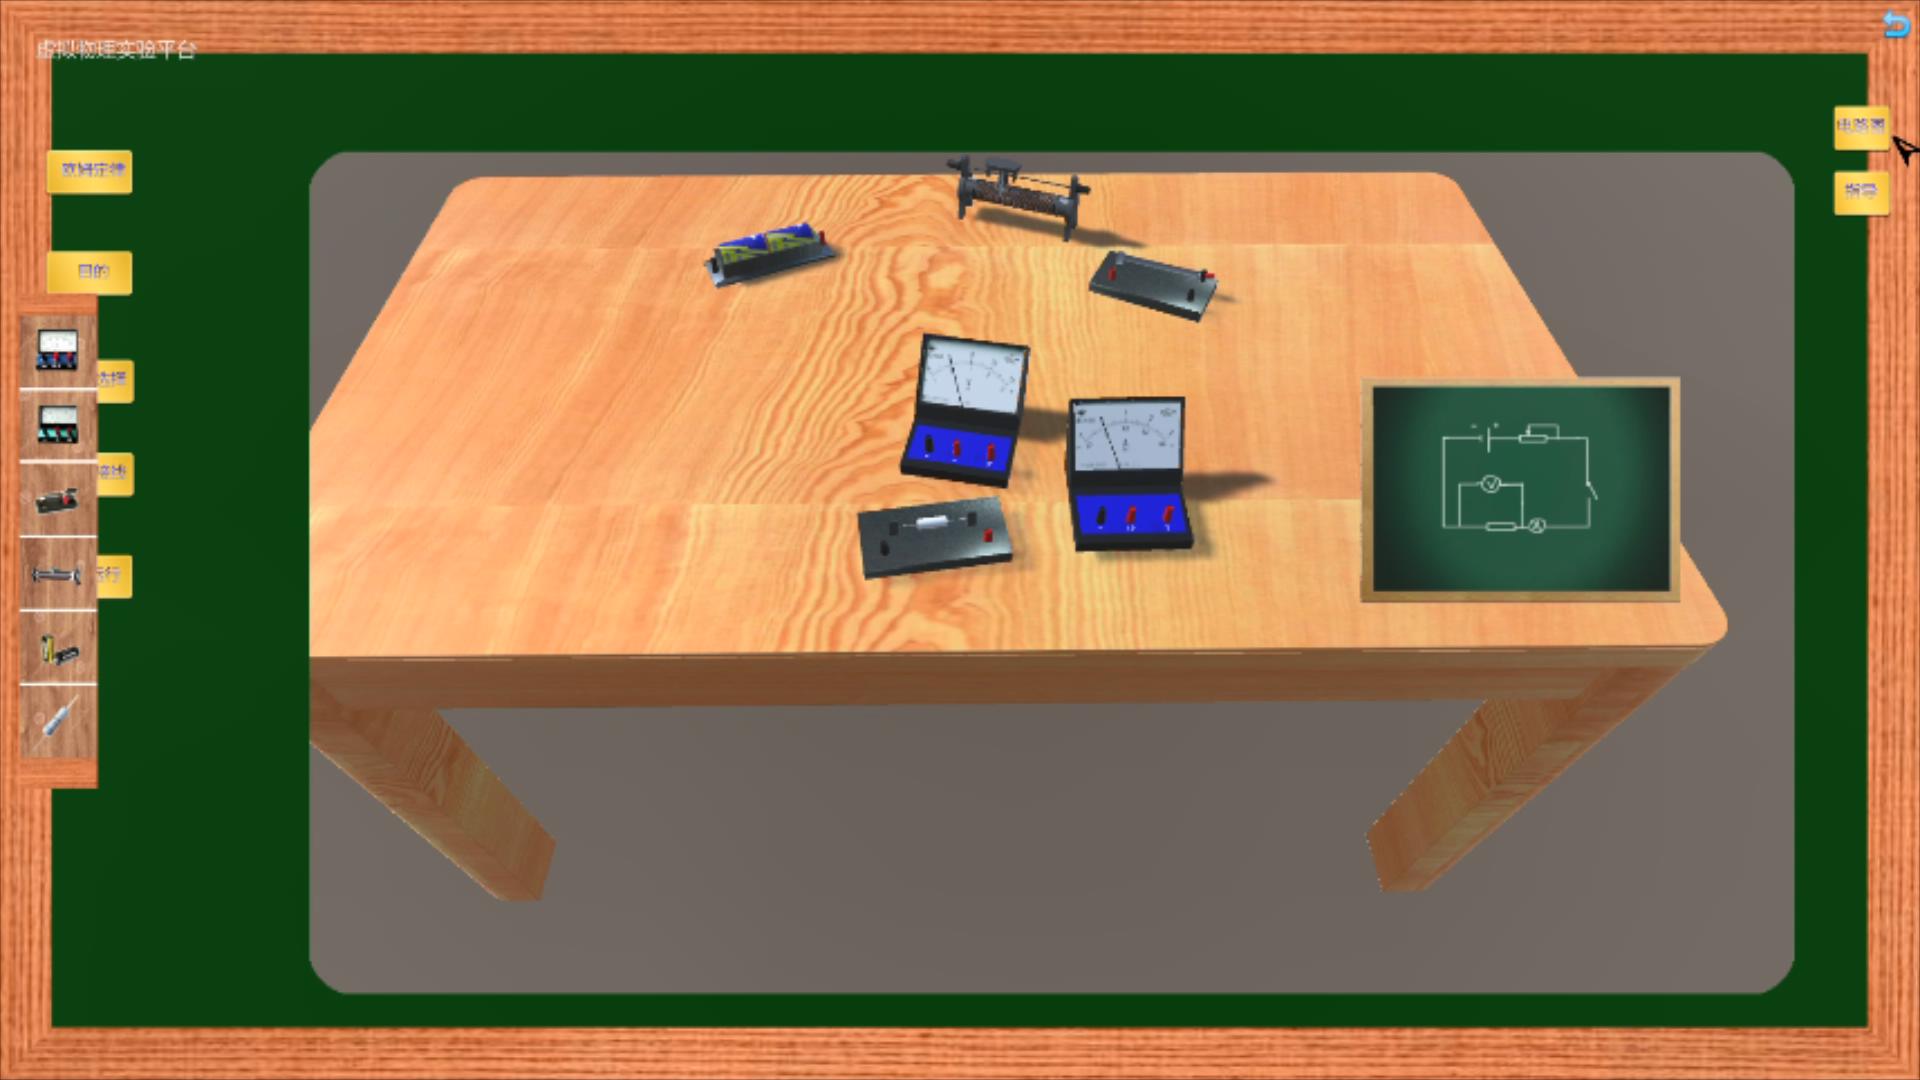 虚拟现实与游戏竞赛作品——e实验——电学实验教学辅助平台